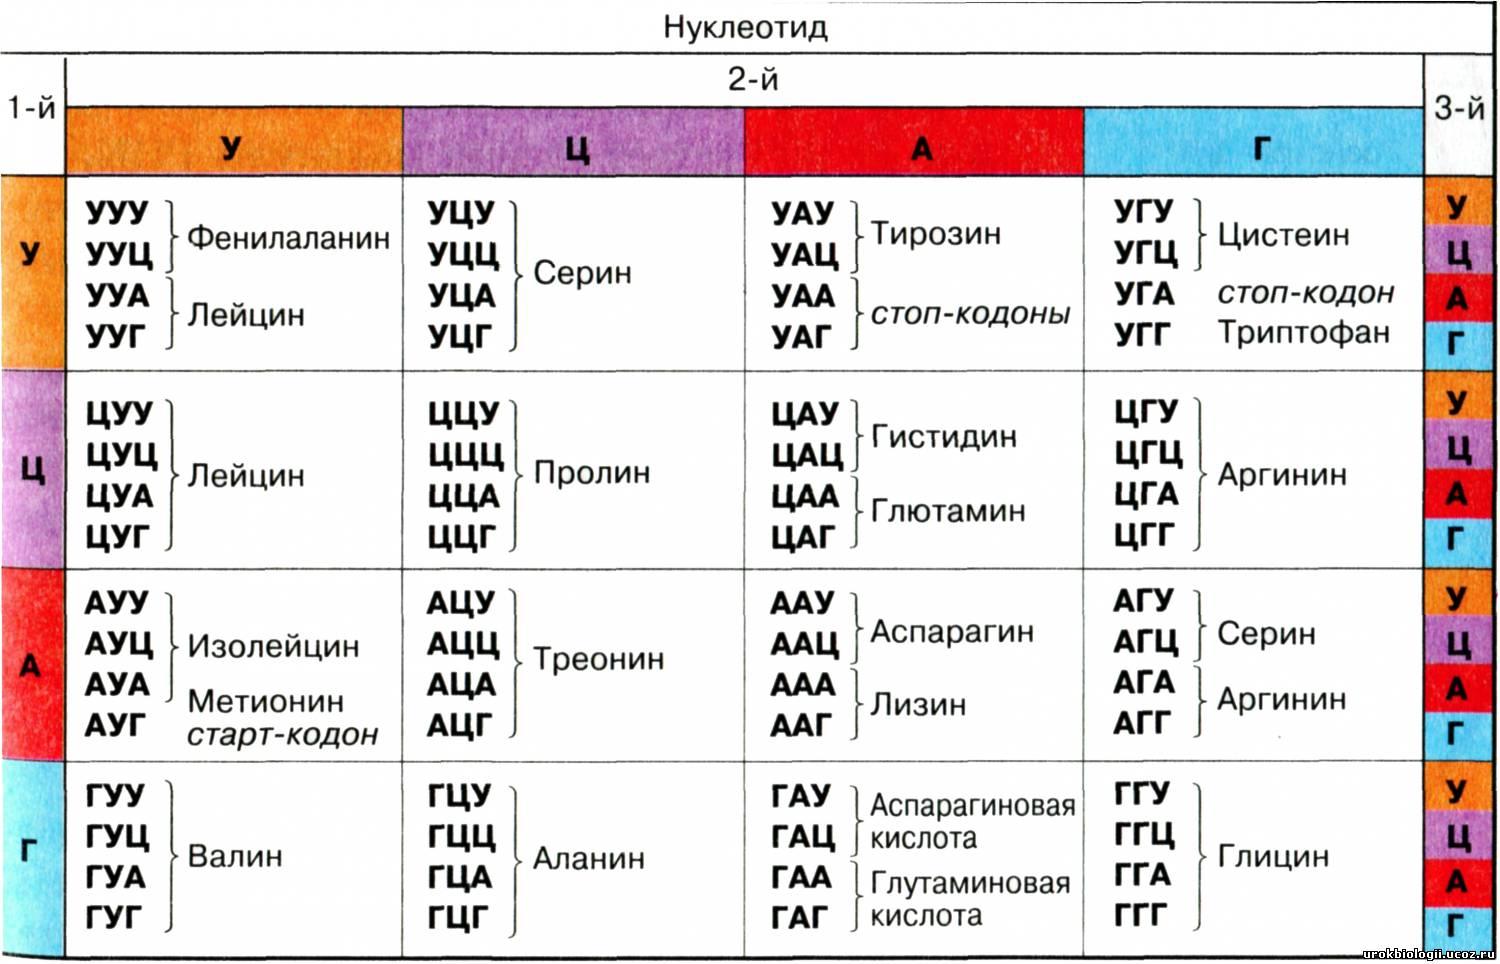 Таблица генетических кодов и РНК